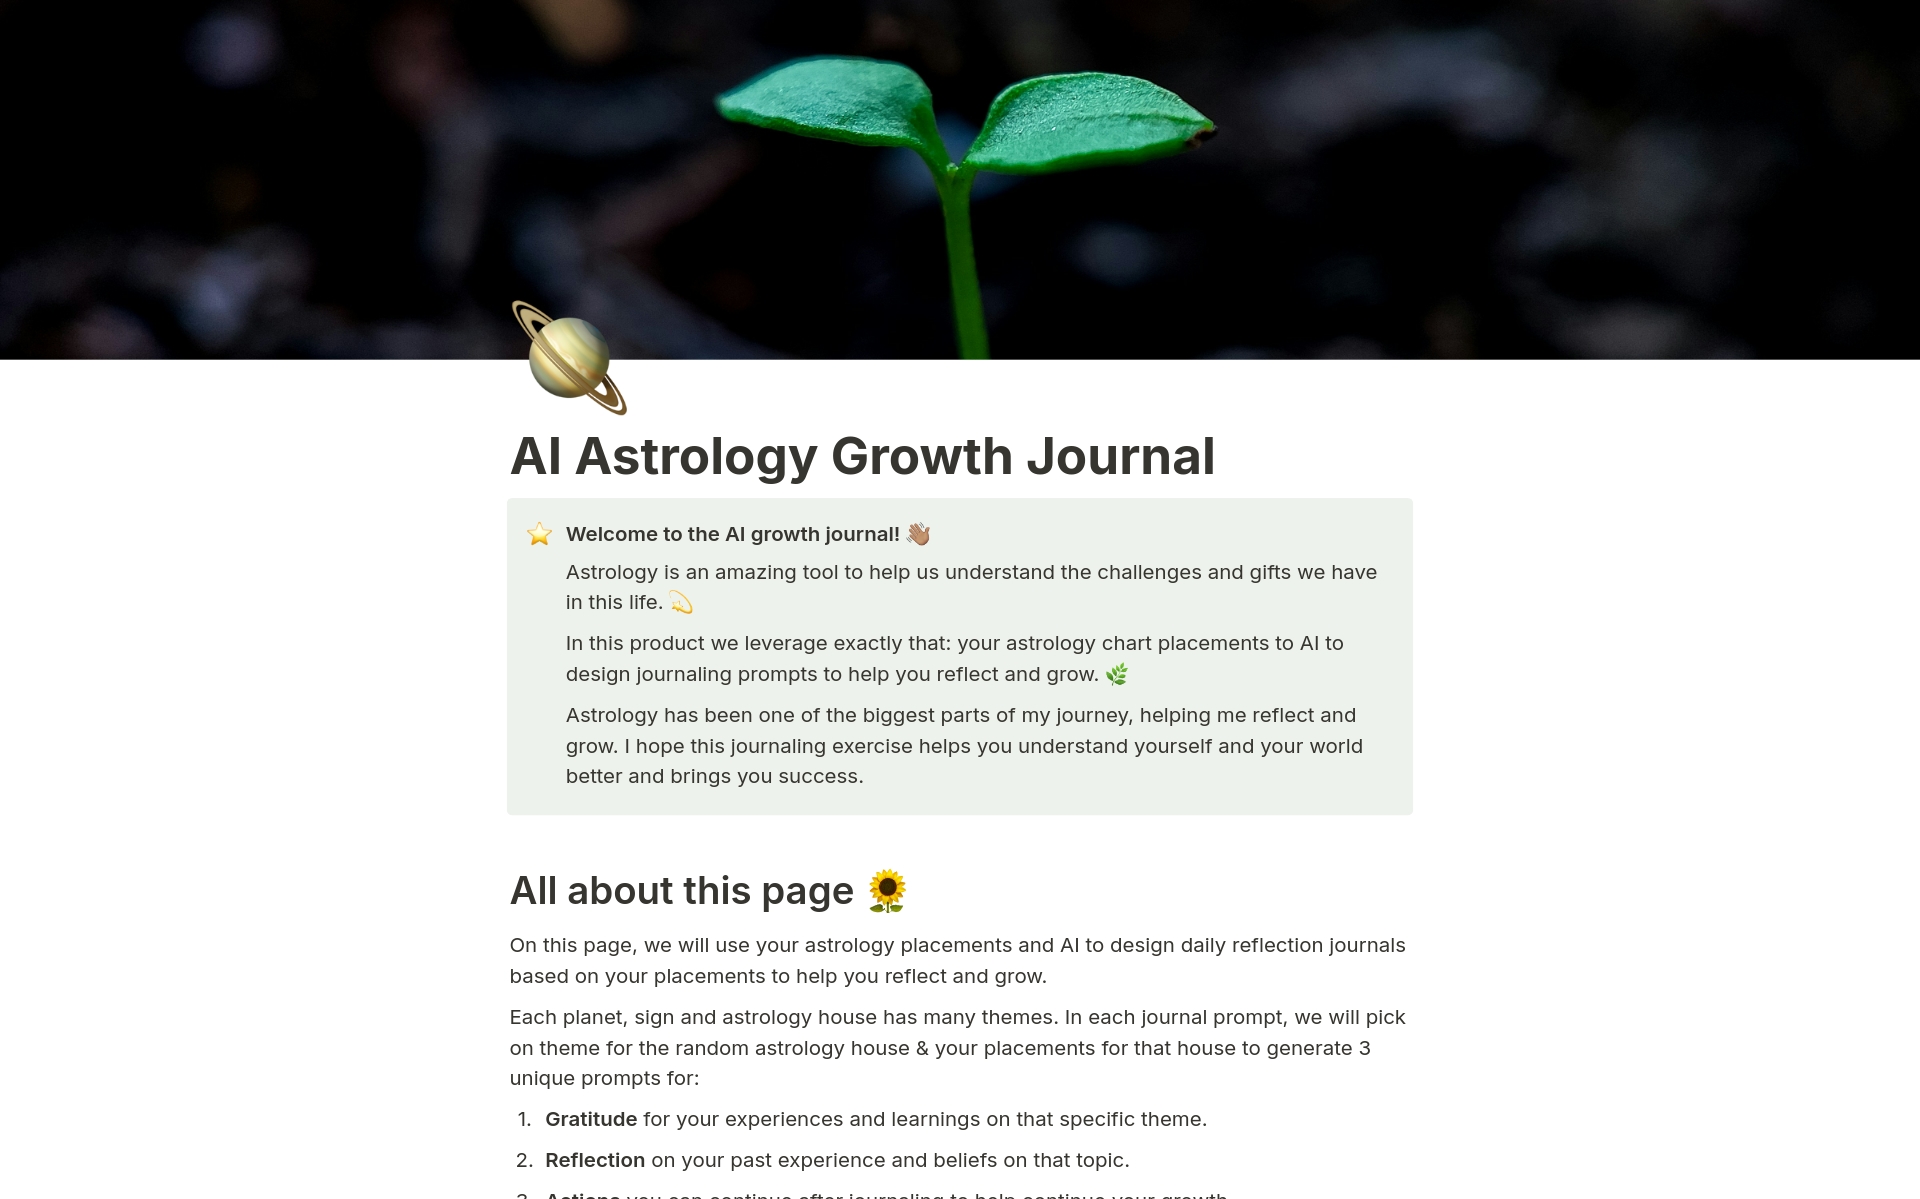 Uma prévia do modelo para AI Astrology Reflection Journal